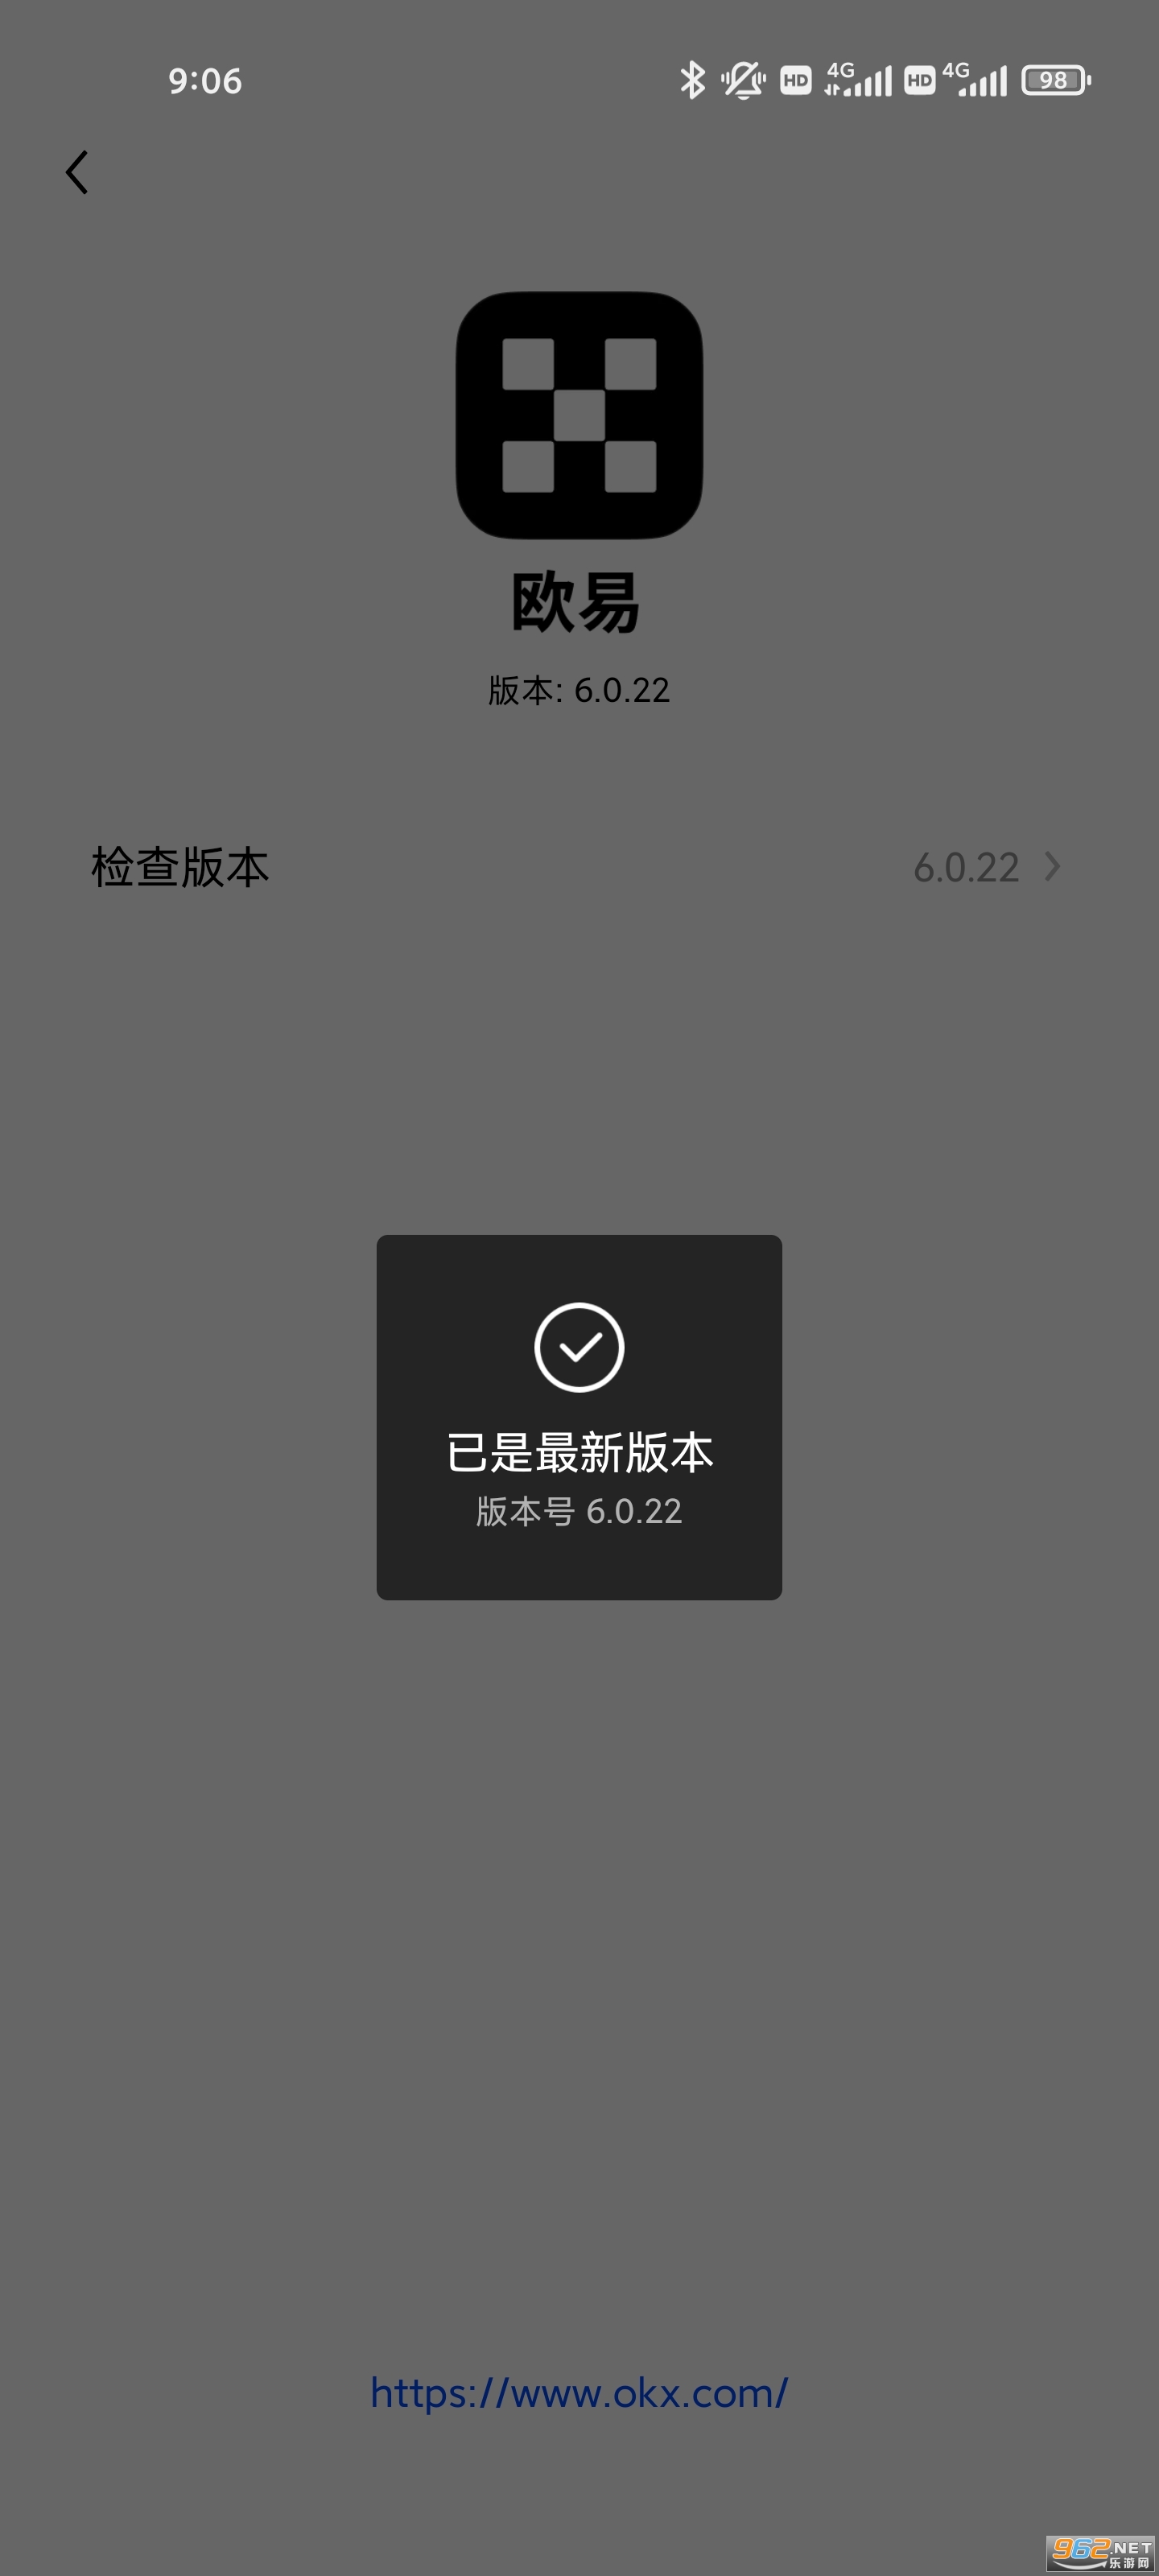 okex hong kong app v6.0.22